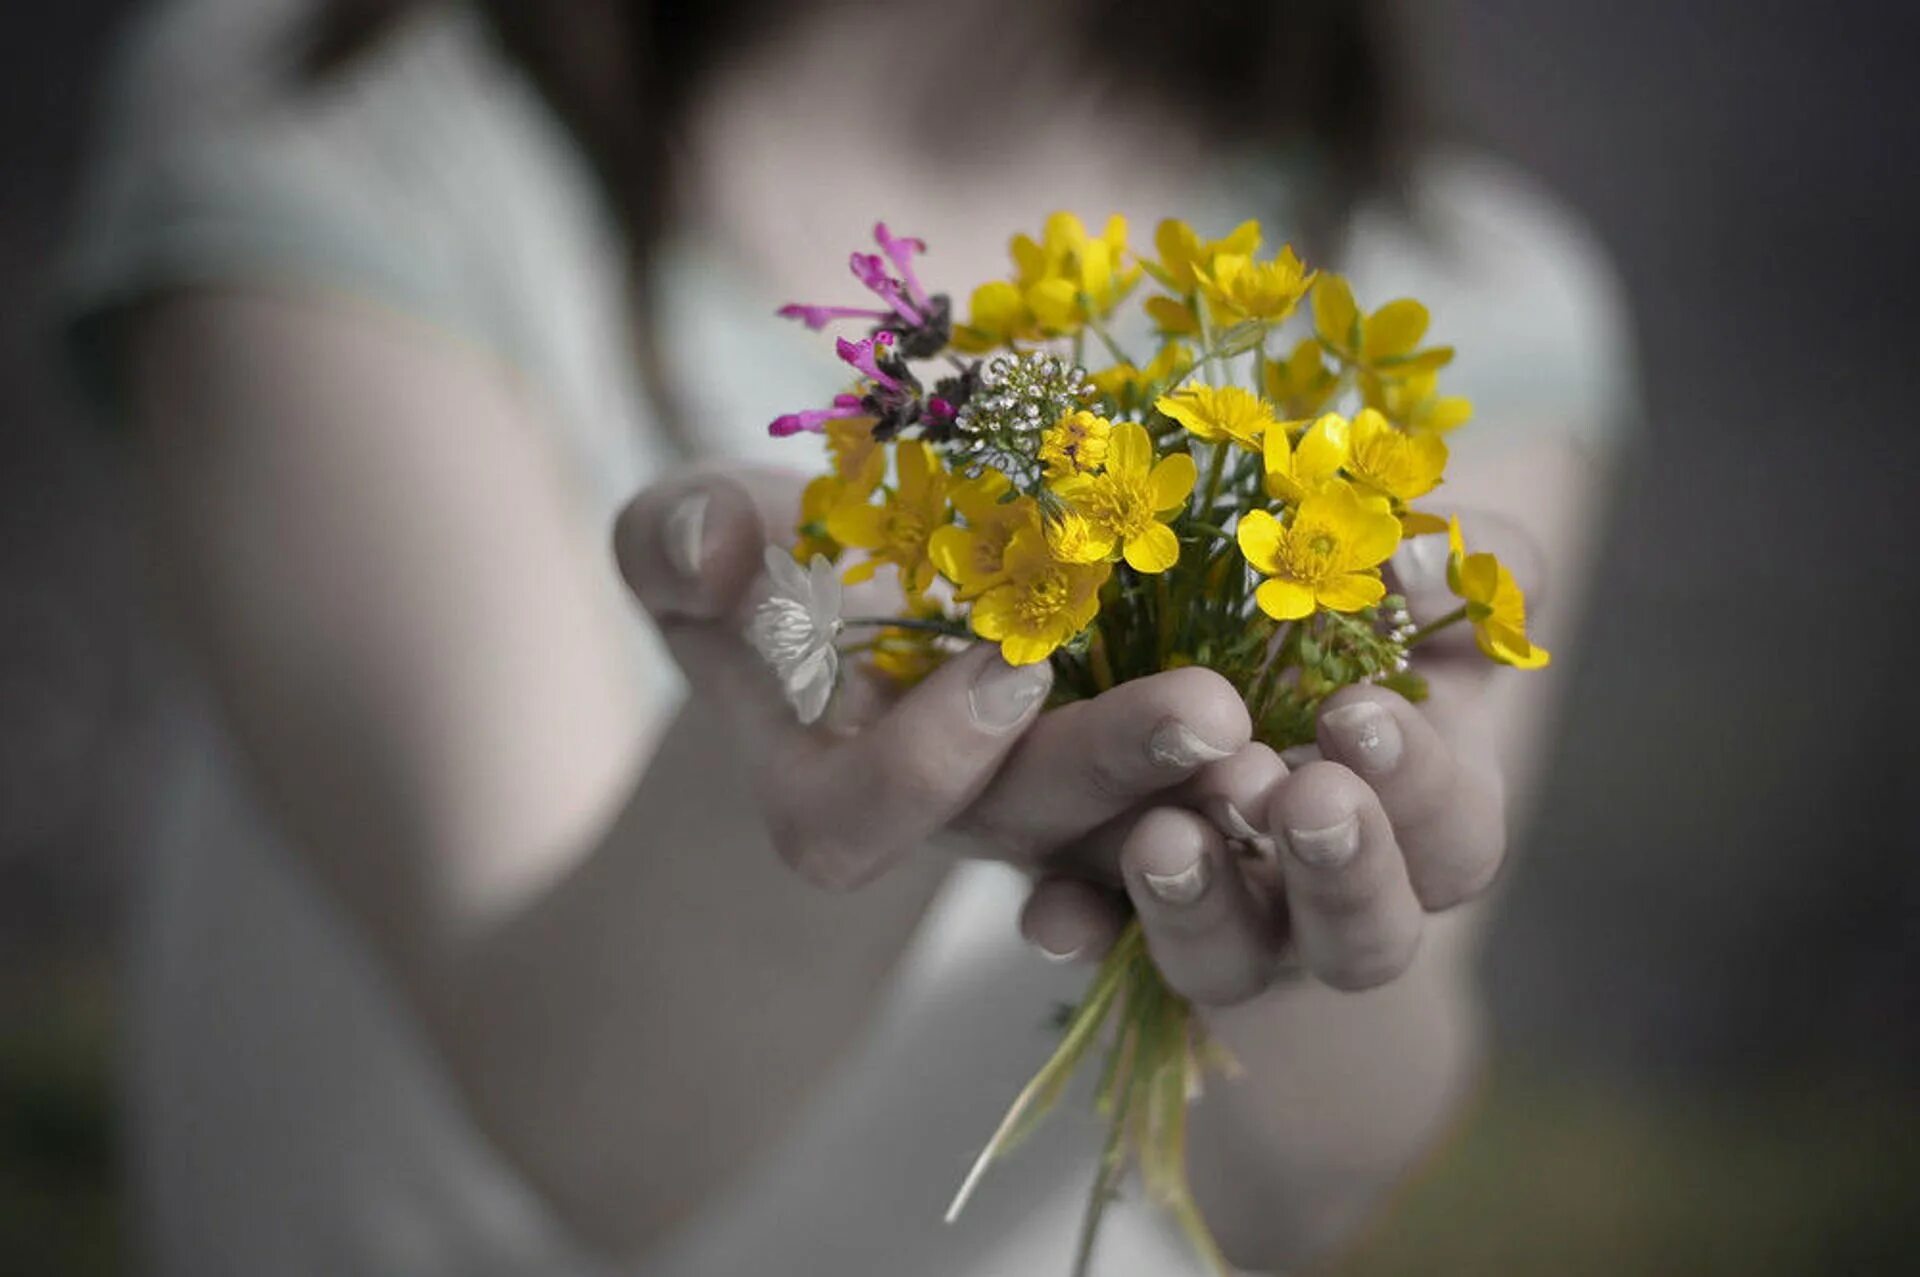 Подарить добро людям. Цветы в ладонях. Цветы радости. Цветы радости жизни. Счастье в руках.